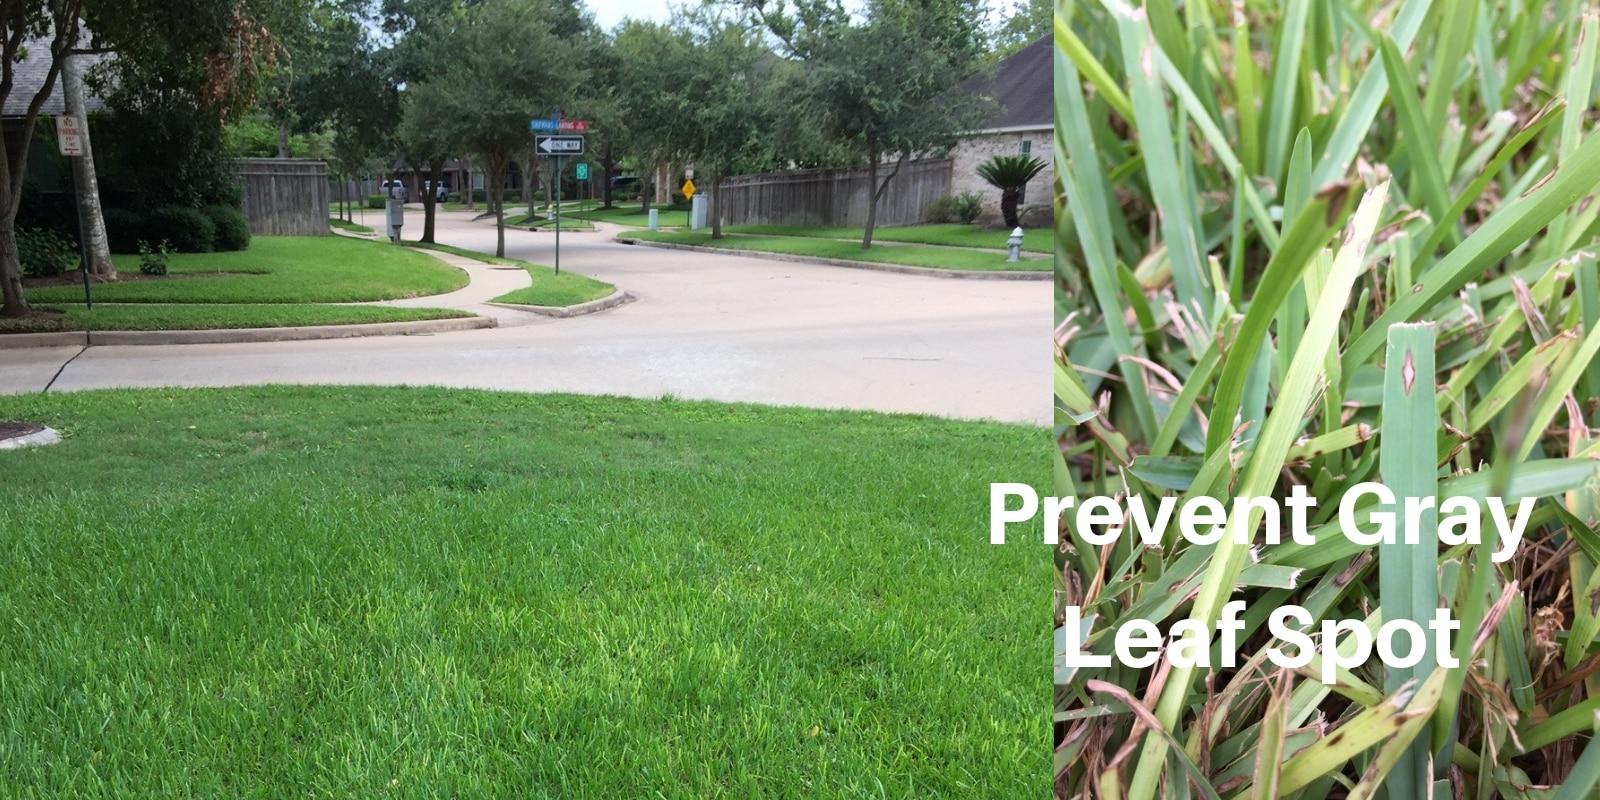 Prevent Gray Leaf Spot in Established Lawns